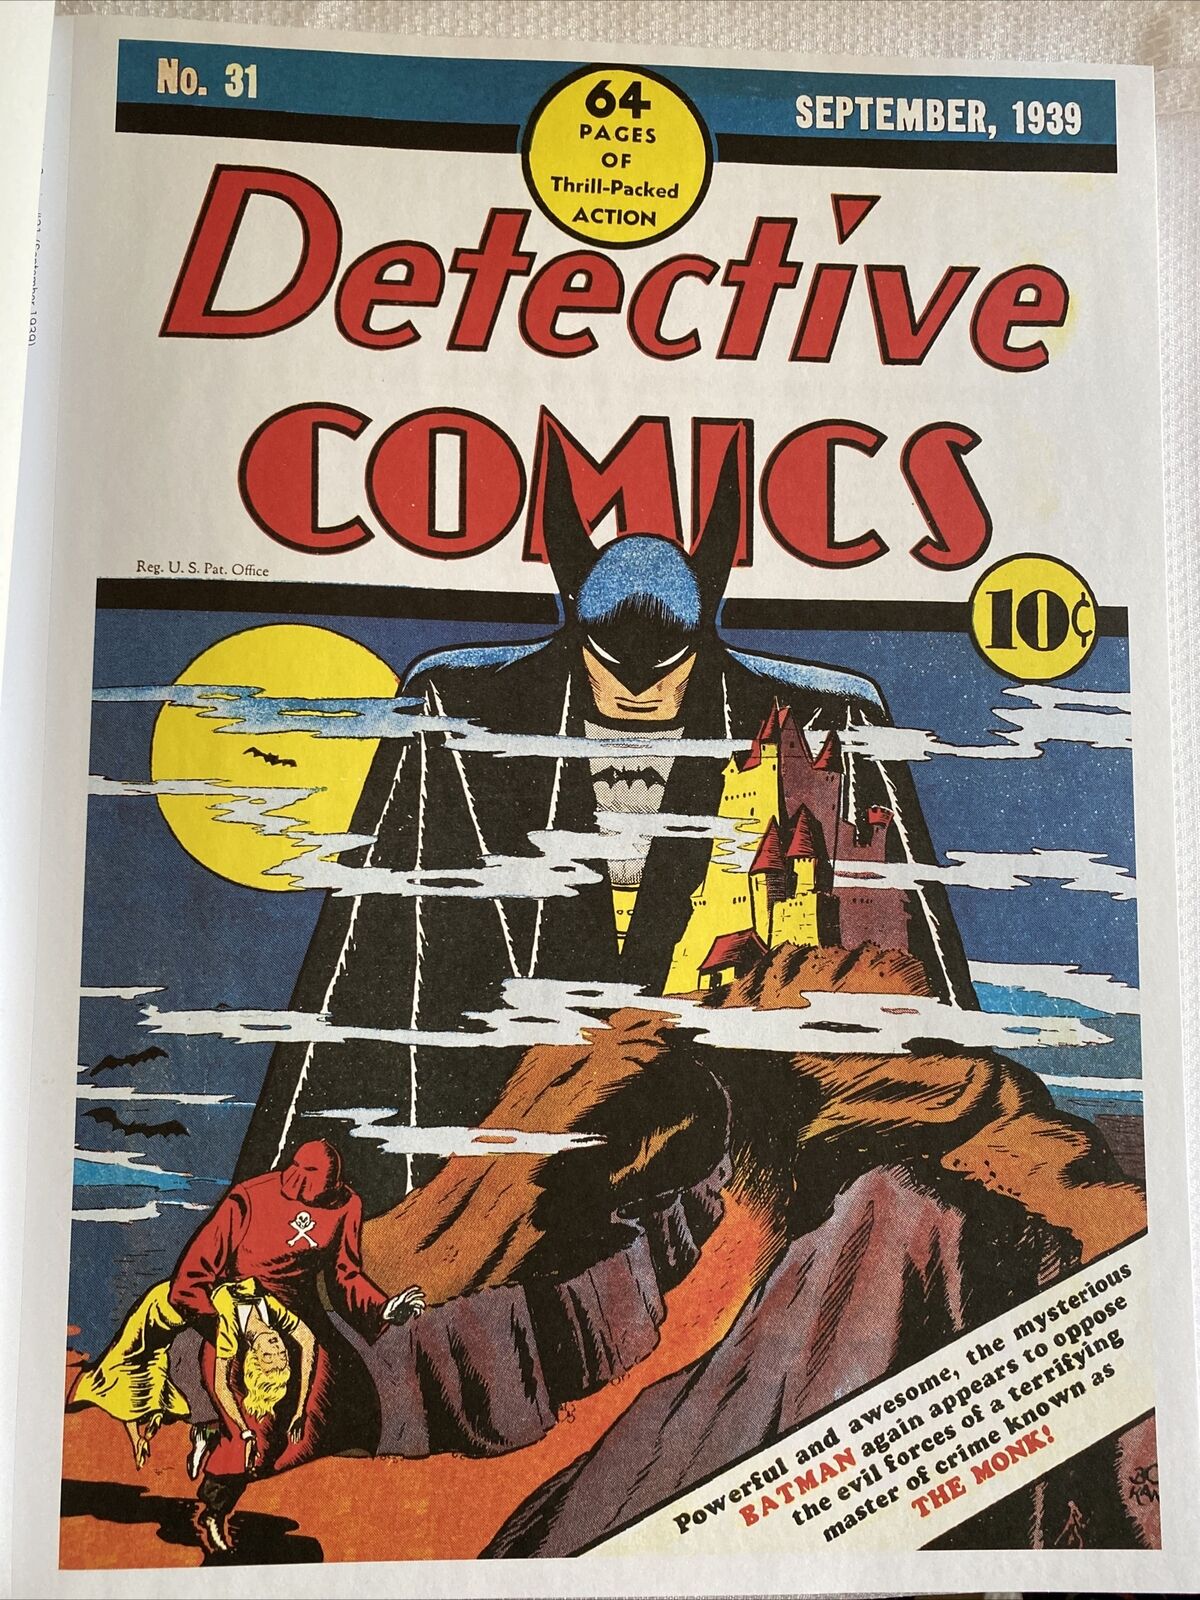 Detective Comics Batman #31 Comics Cover Poster